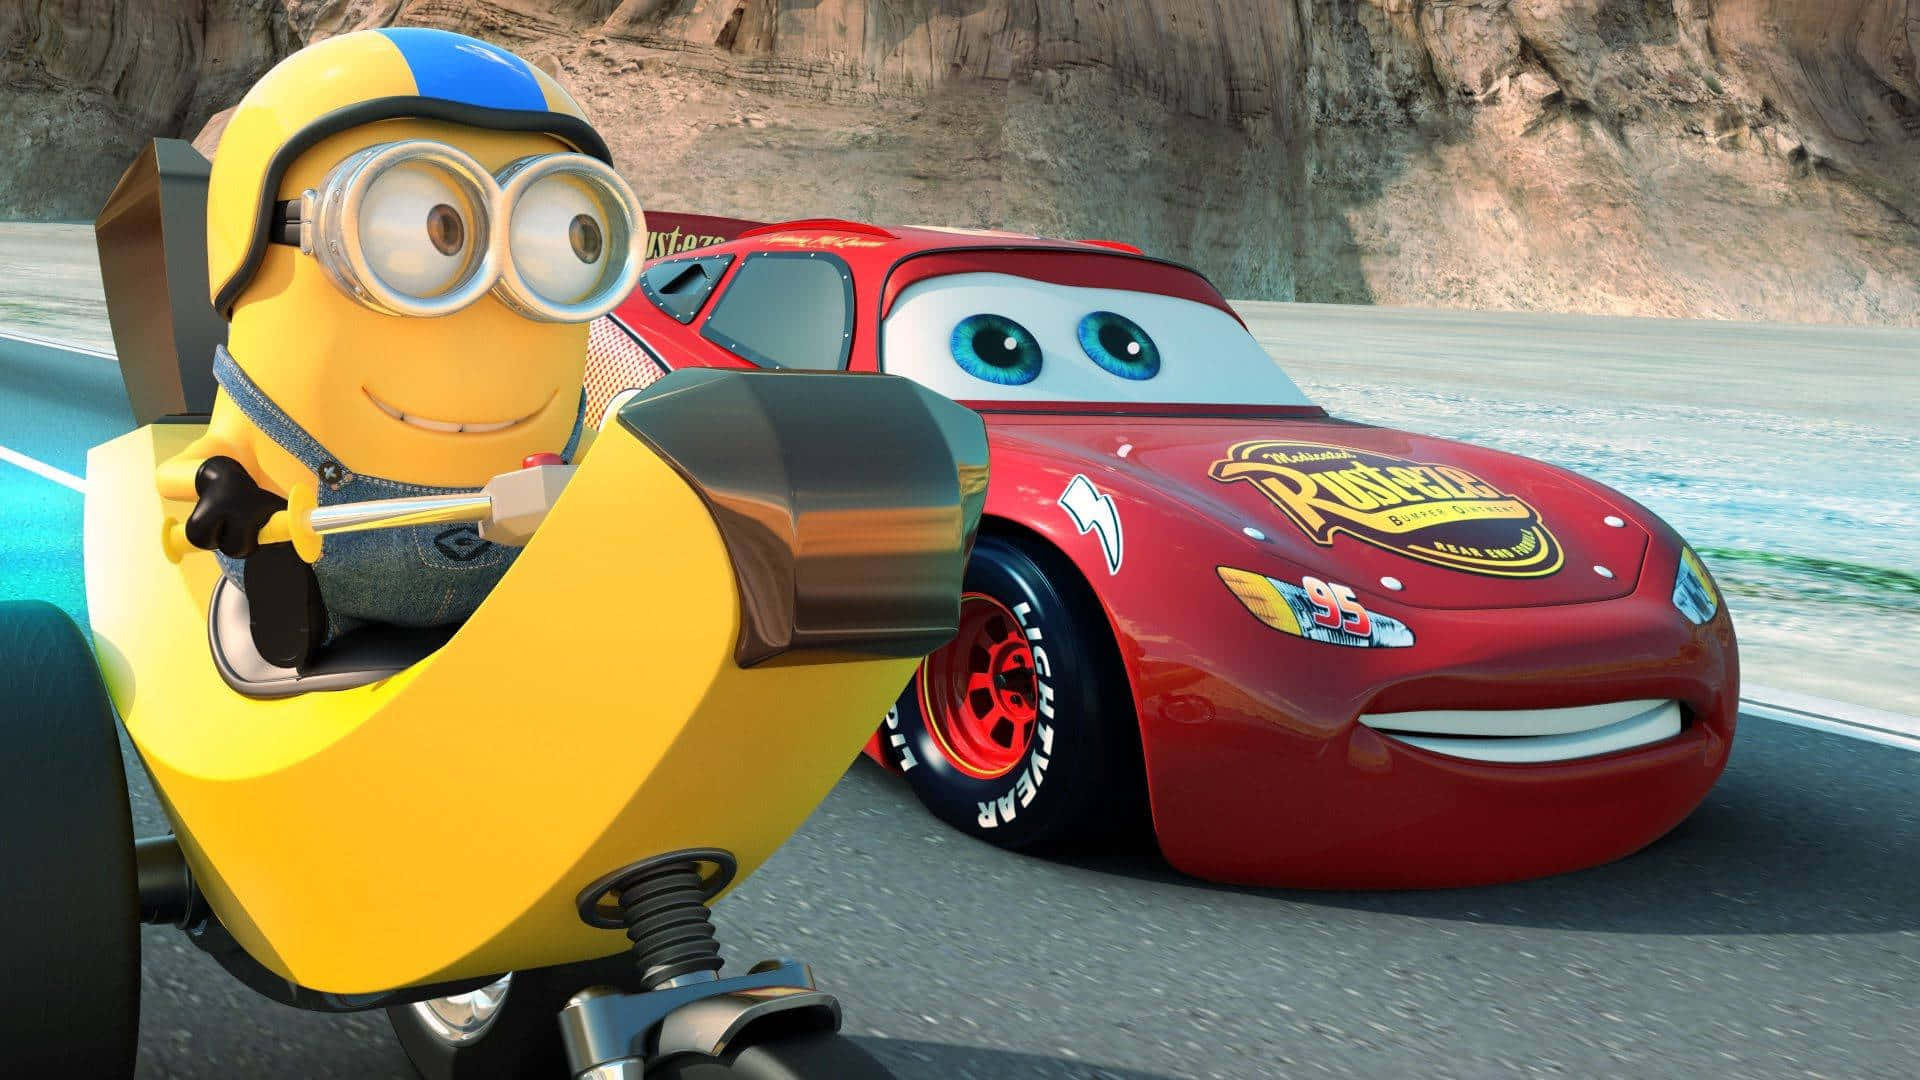 Lightning McQueen racing across an open road in Pixar's Cars